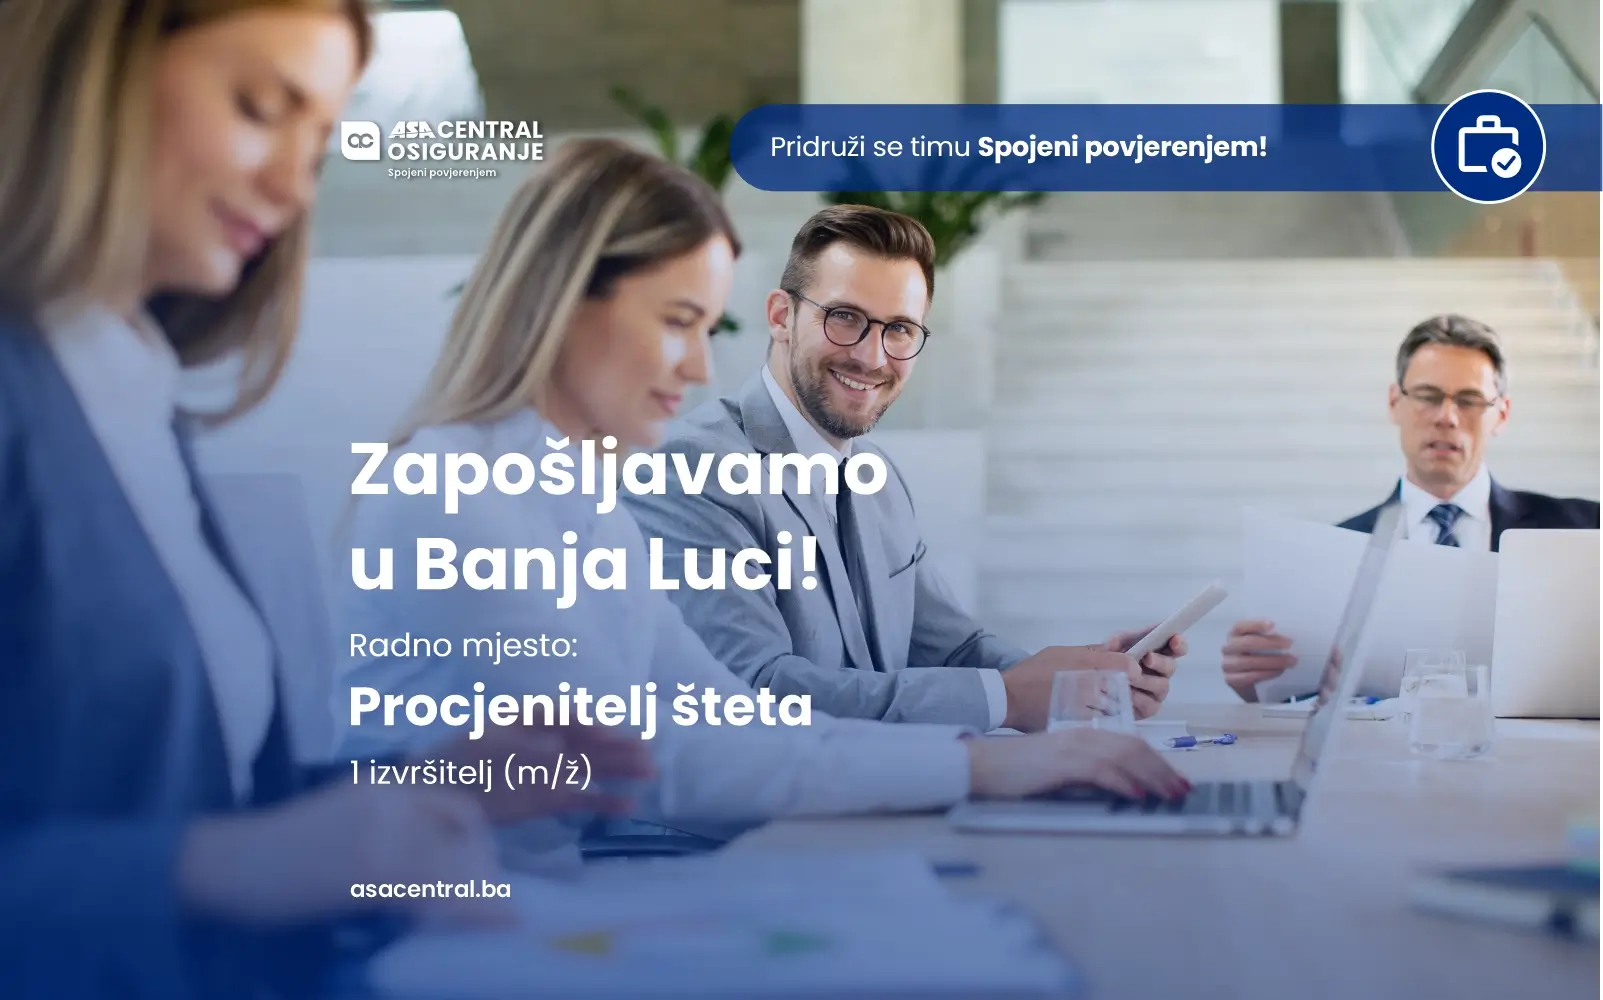 Prijavi se za radno mjesto u Banja Luci